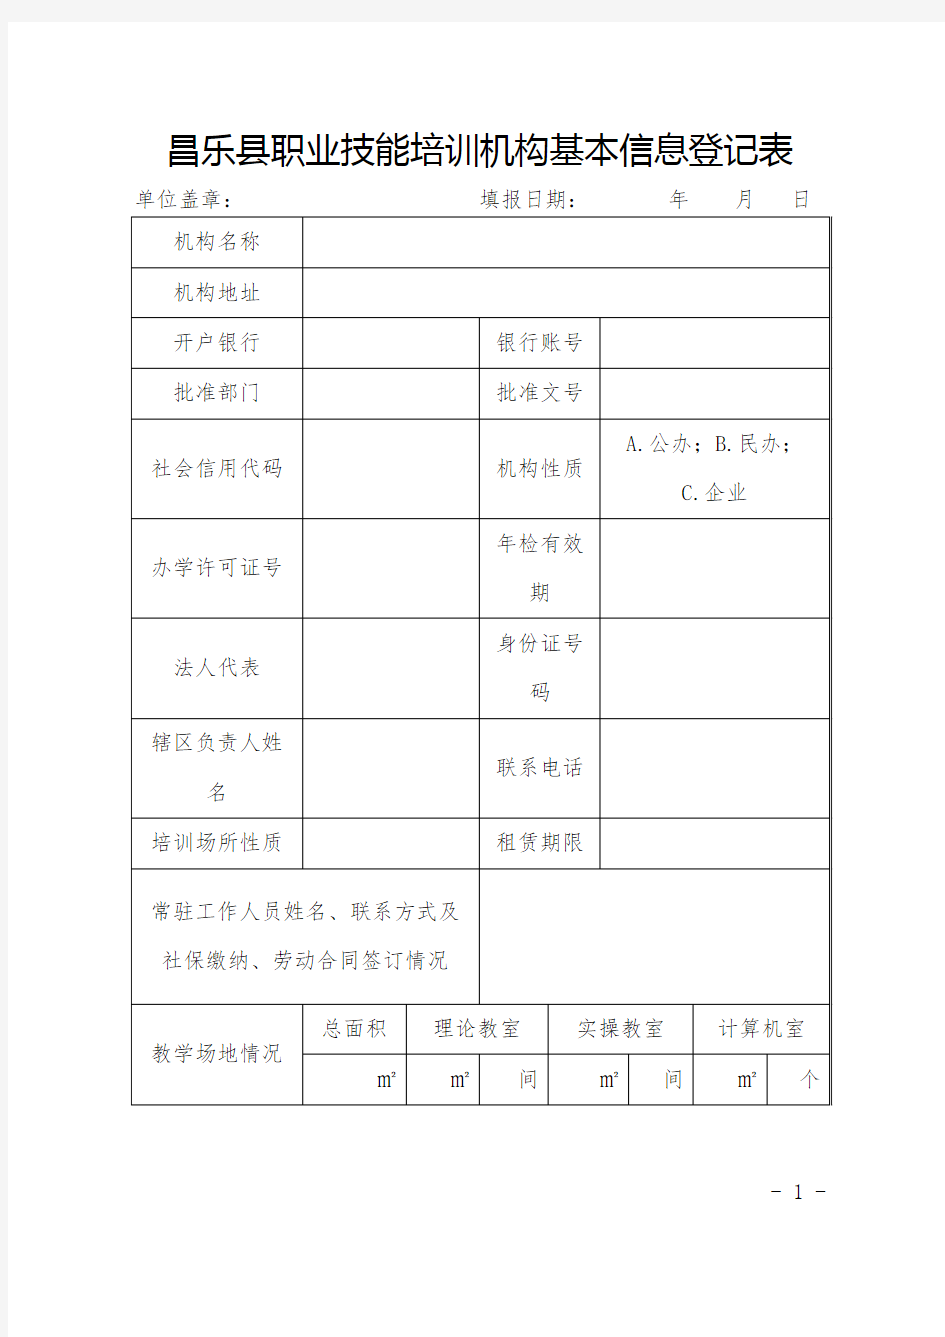 昌乐县职业技能培训机构基本信息登记表